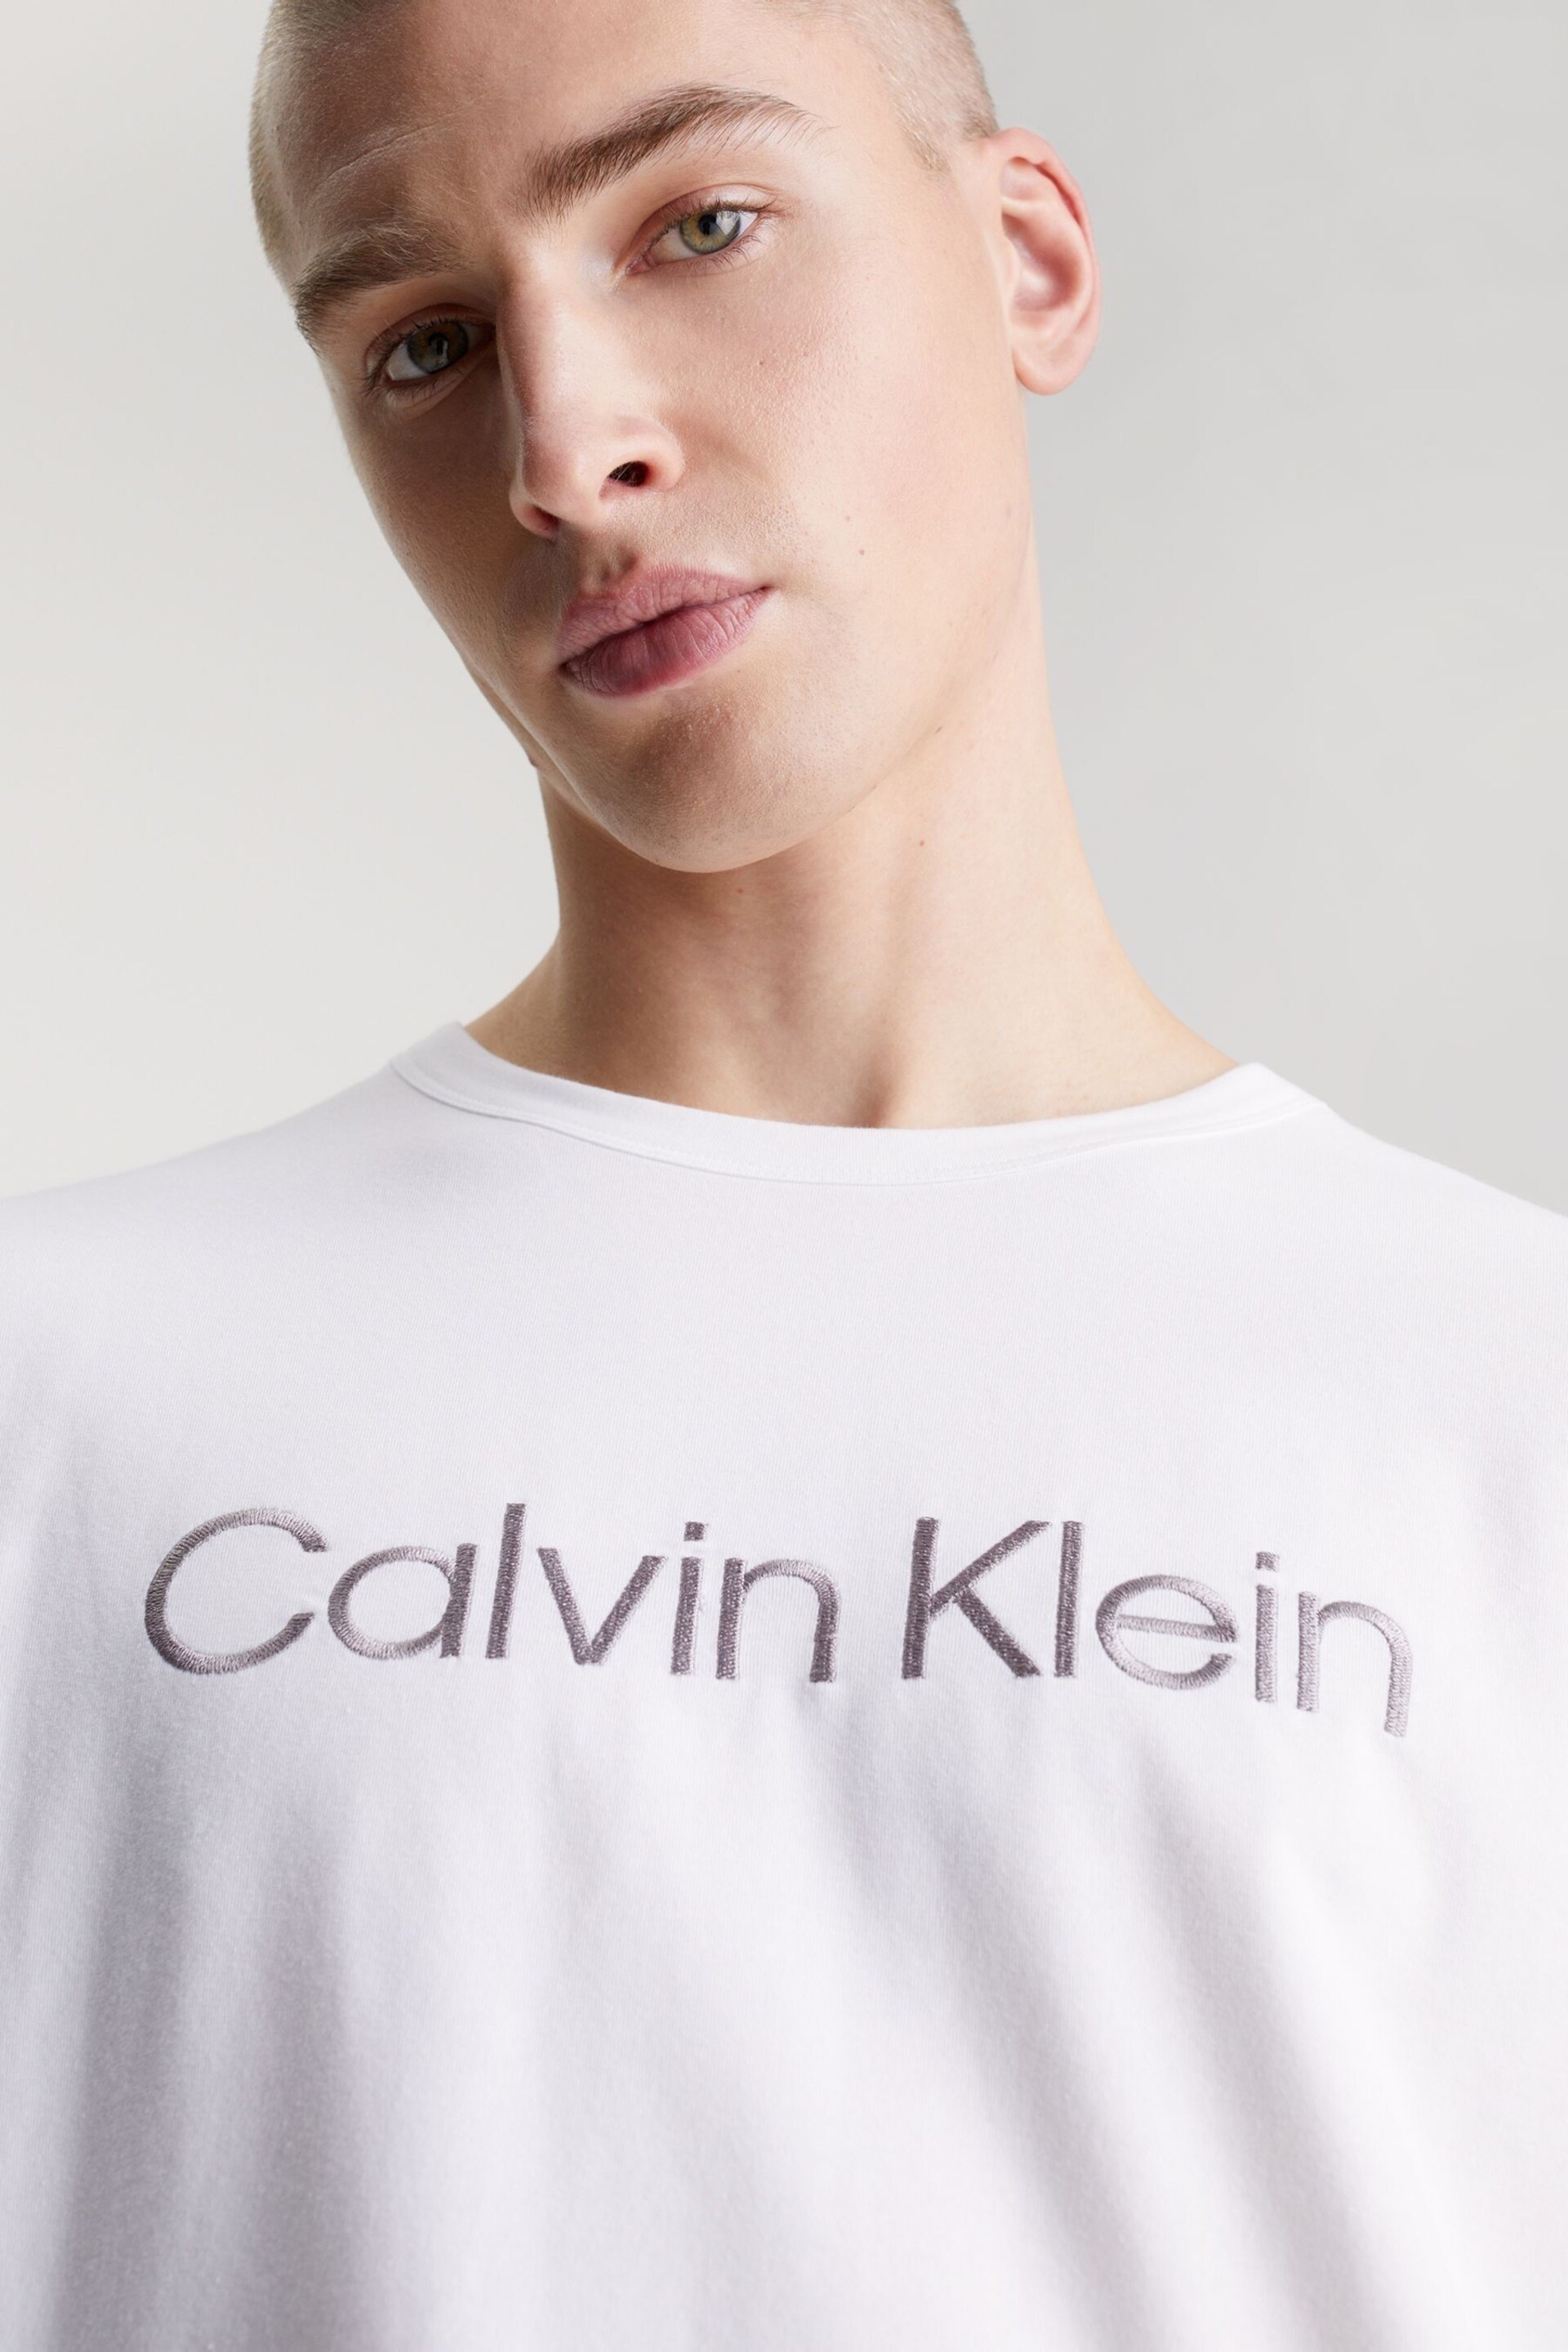 Calvin Klein White Slogan Crew Neck T-Shirt - Image 3 of 4